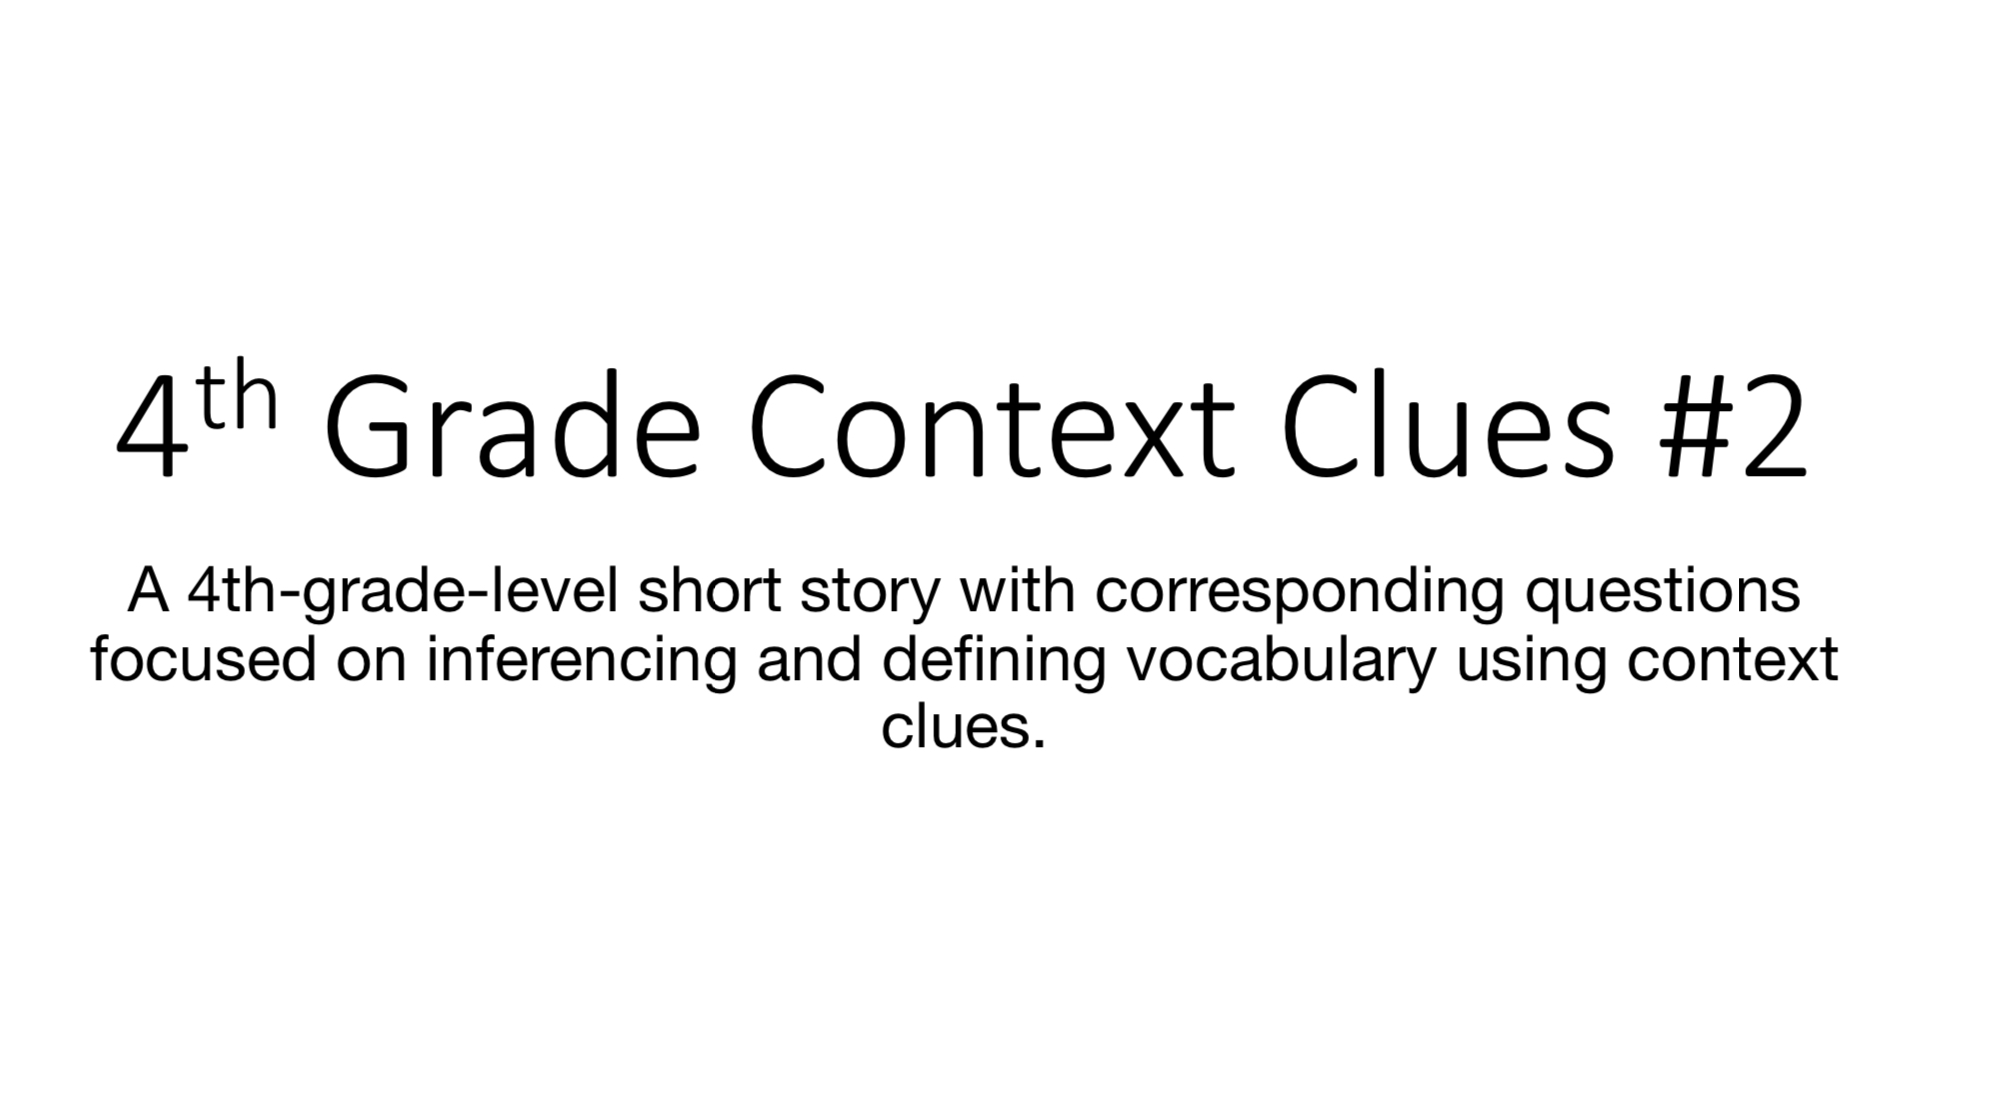 4th Grade Context Clues #2 image